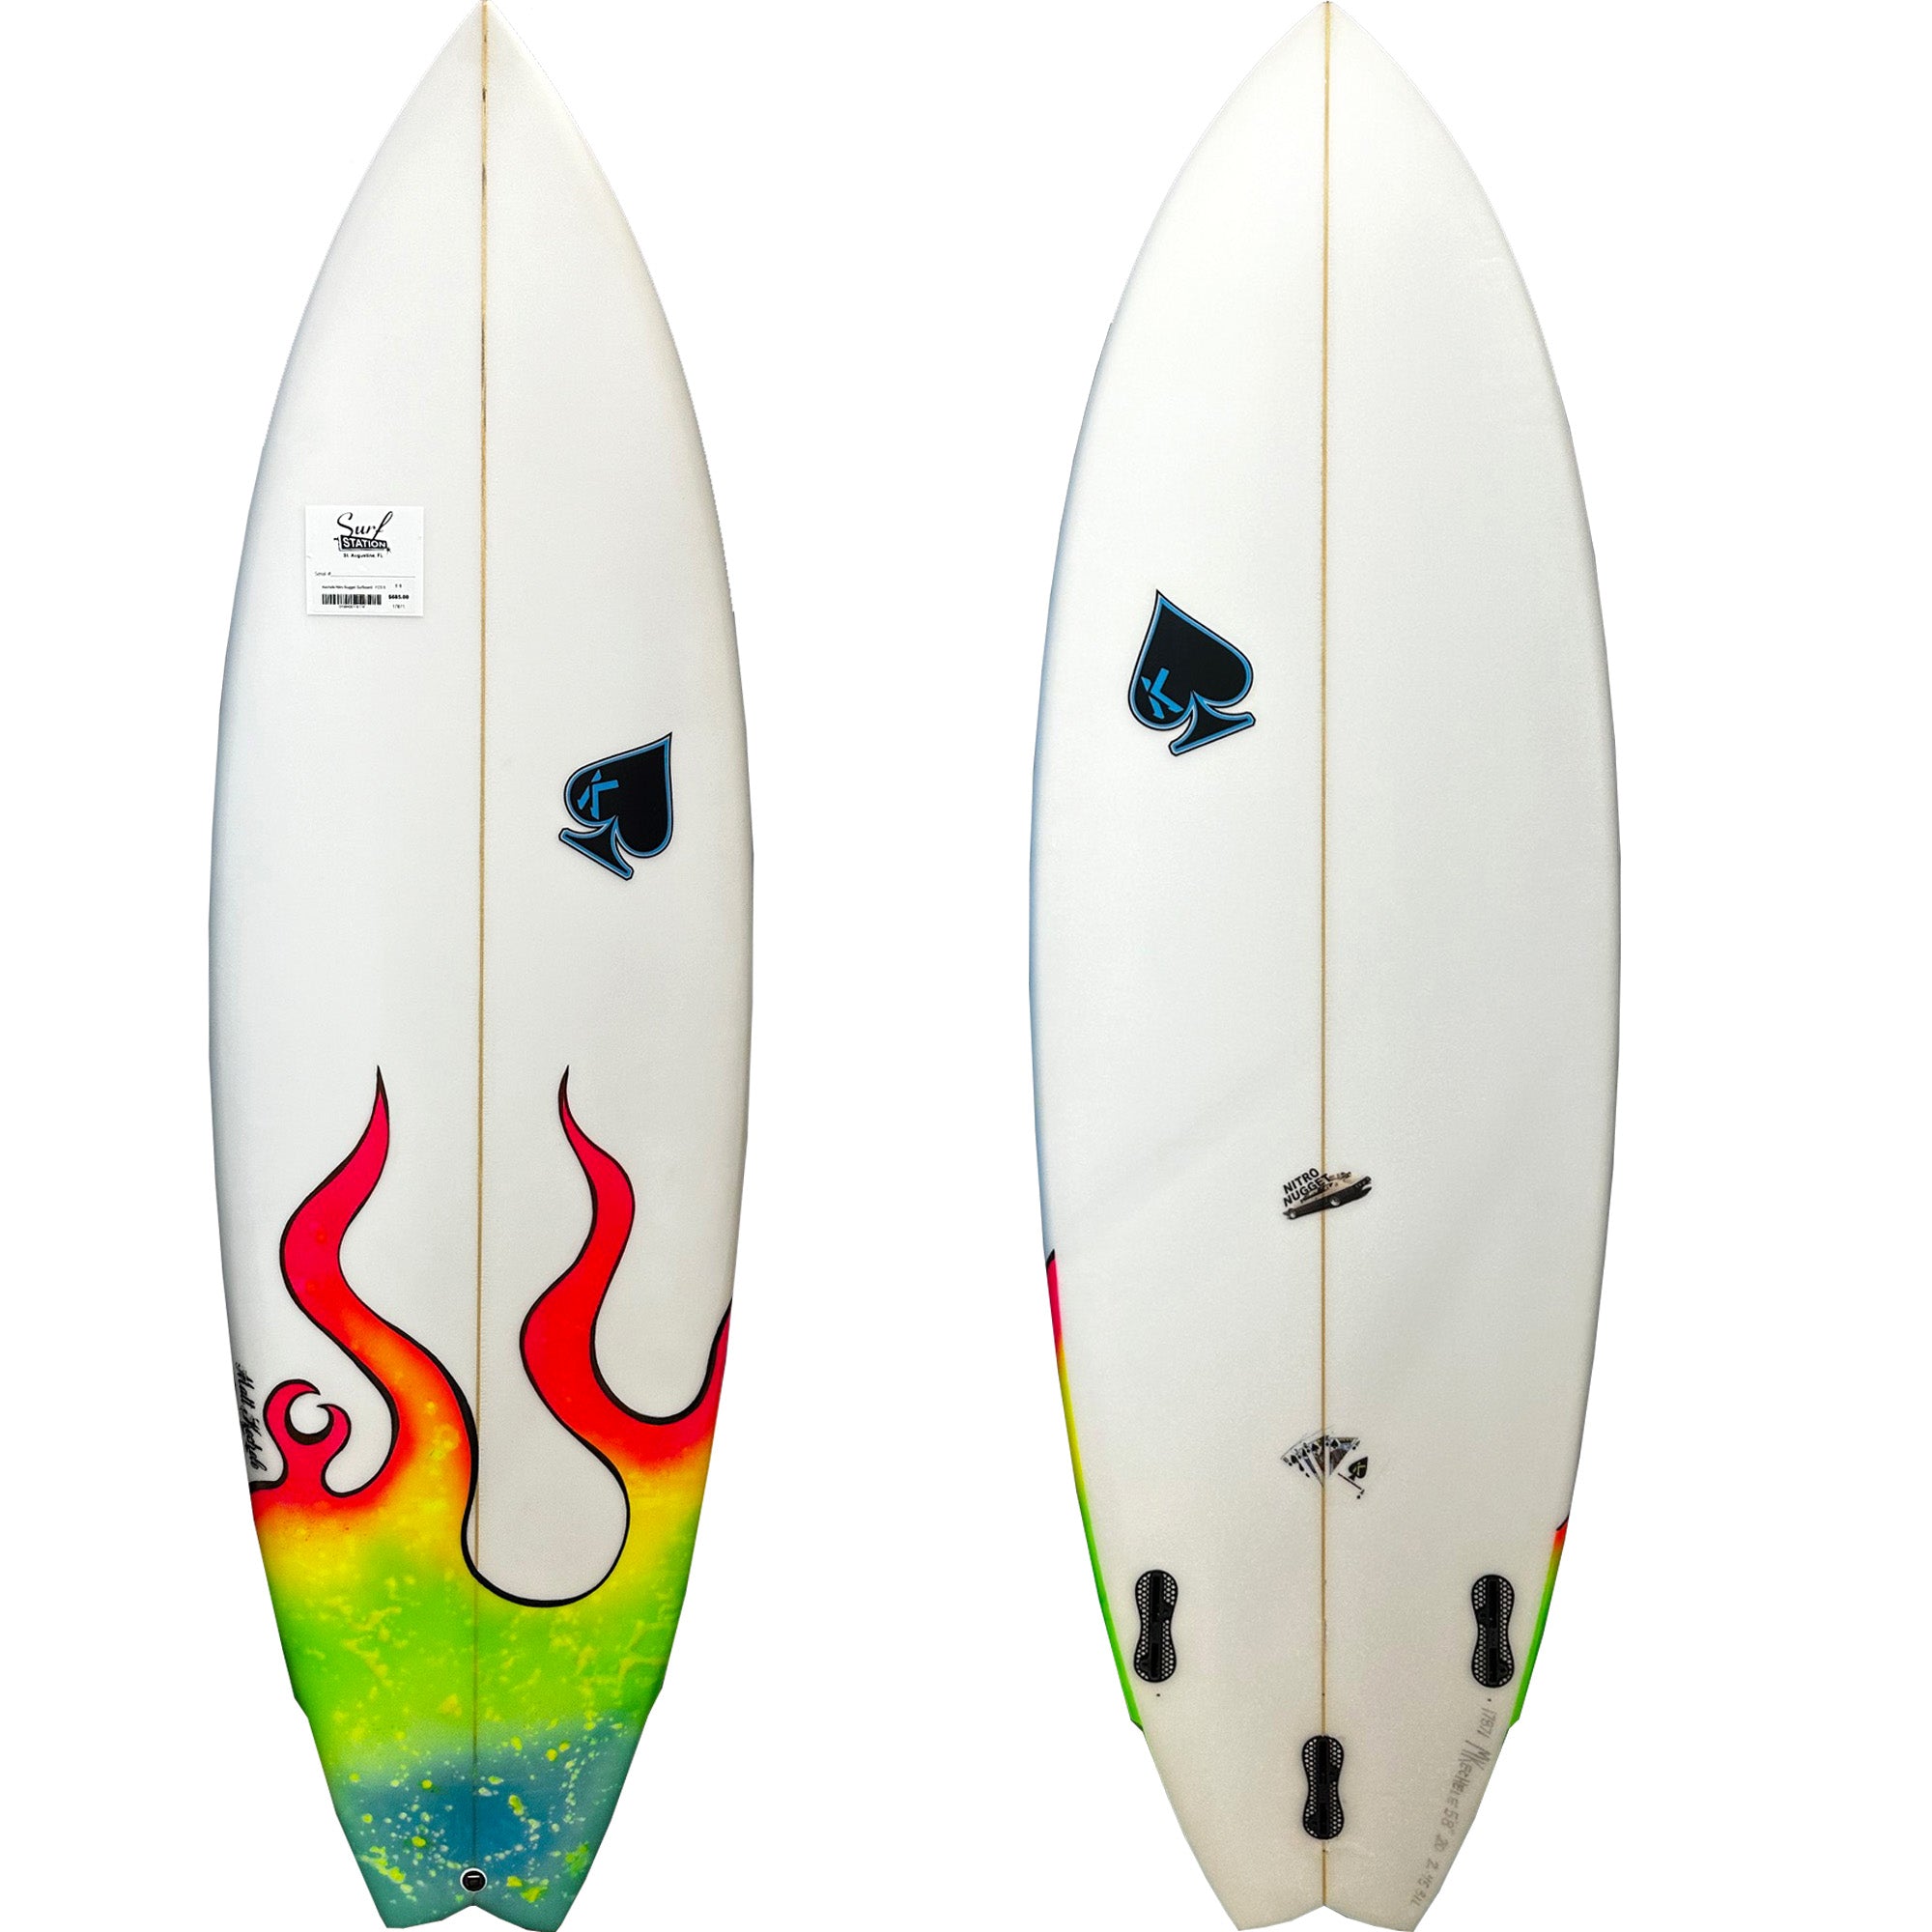 Kechele Nitro Nugget 5'8 Surfboard - FCS II